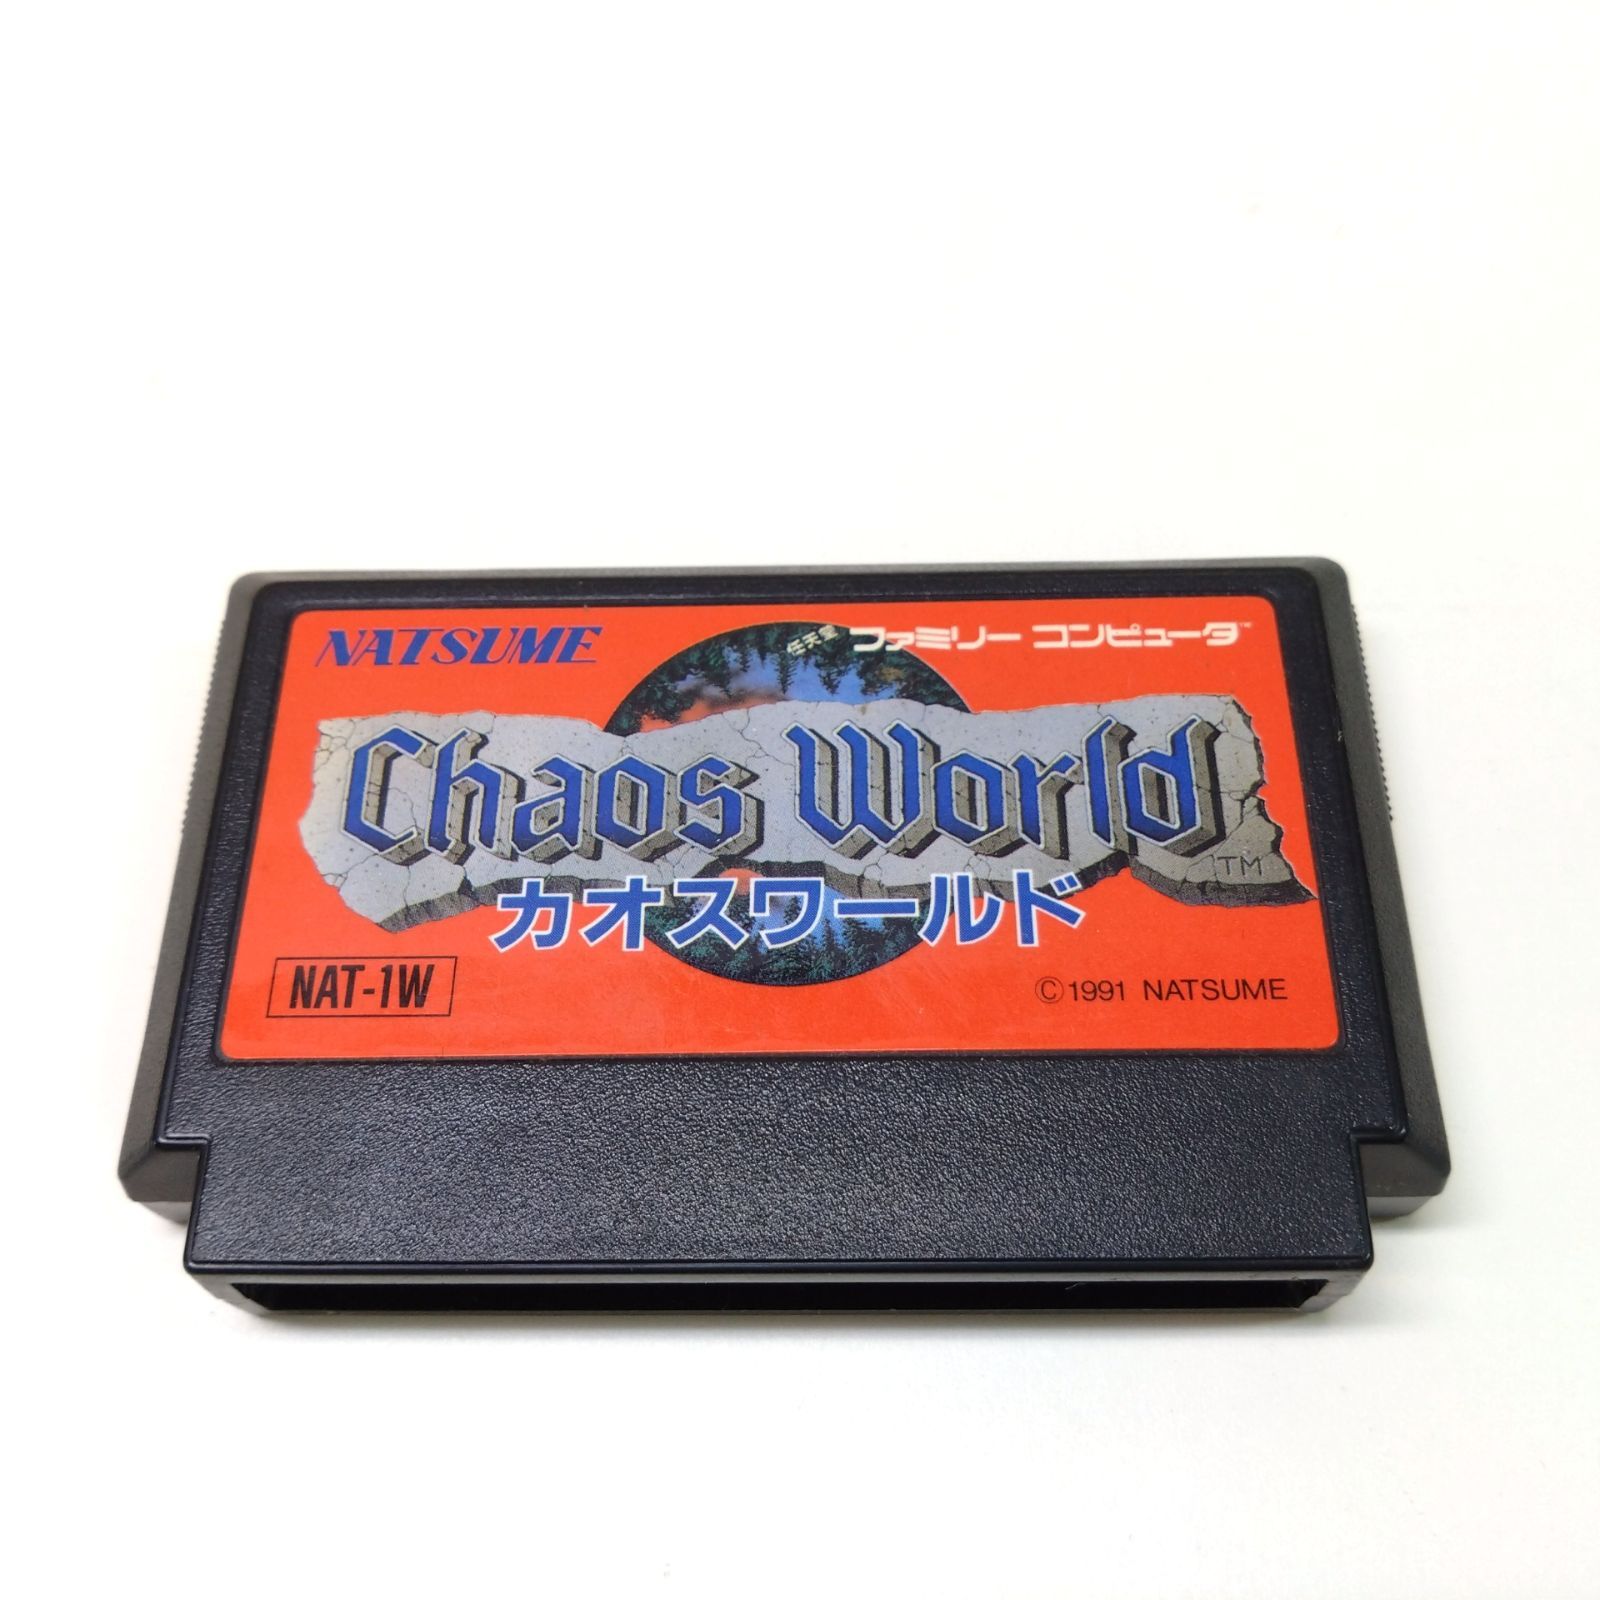 86 カオスワールド Chaos Warld ファミコン ソフト レトロ - メルカリ